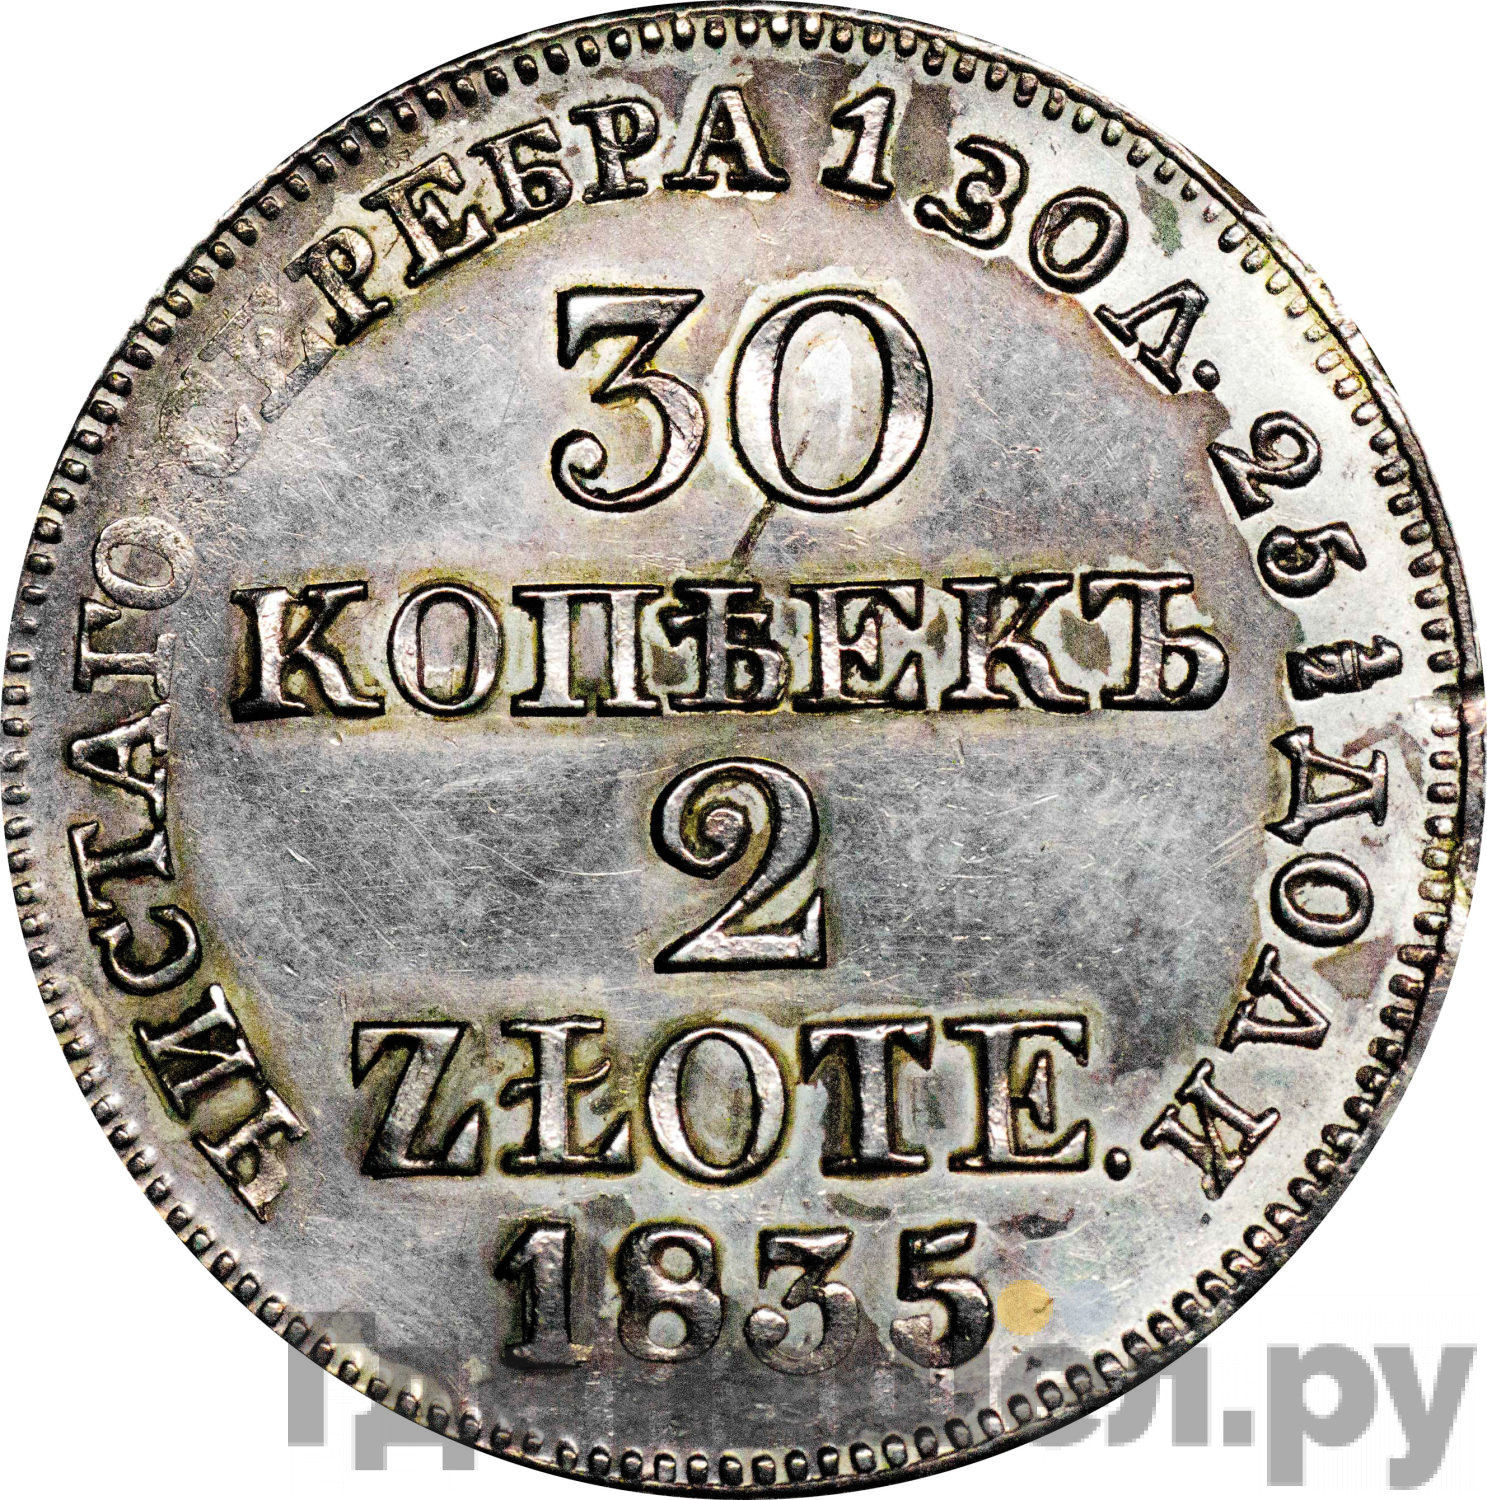 30 копеек - 2 злотых 1835 года МW Русско-Польские